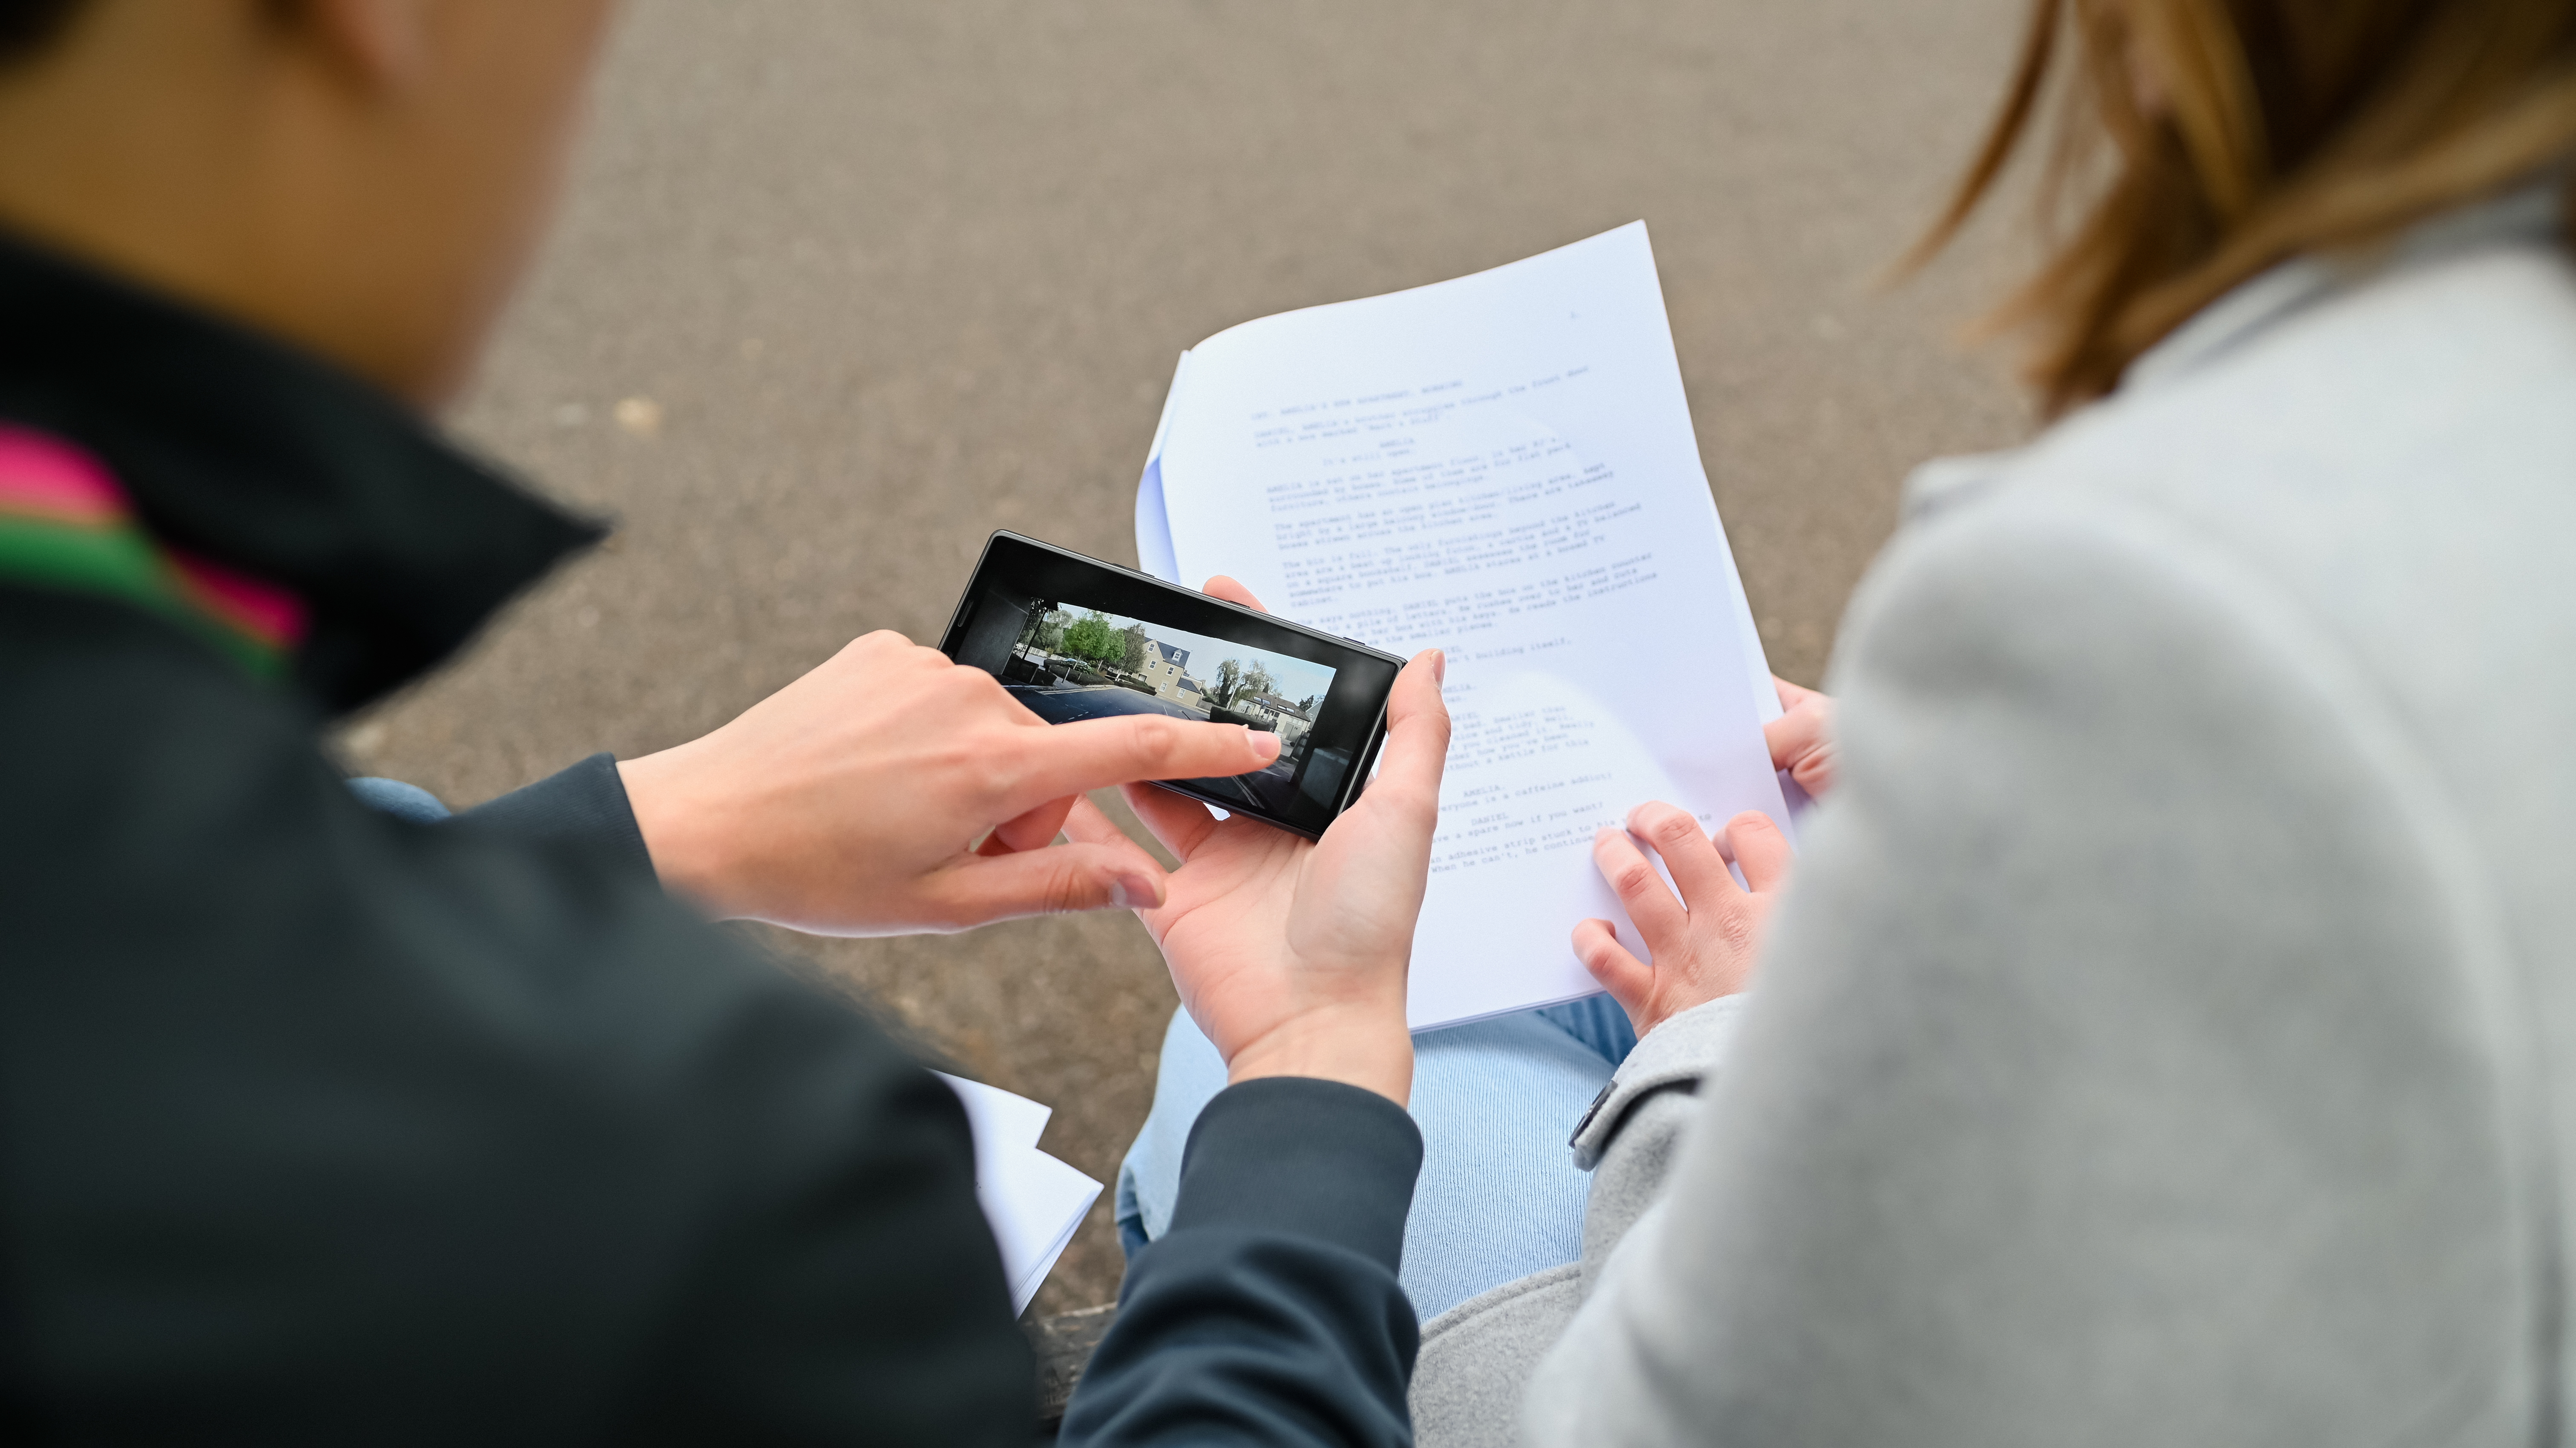 Widok zza ramienia osoby trzymającej telefon i przeglądającej materiał filmowy, podczas gdy druga osoba czyta scenariusz.